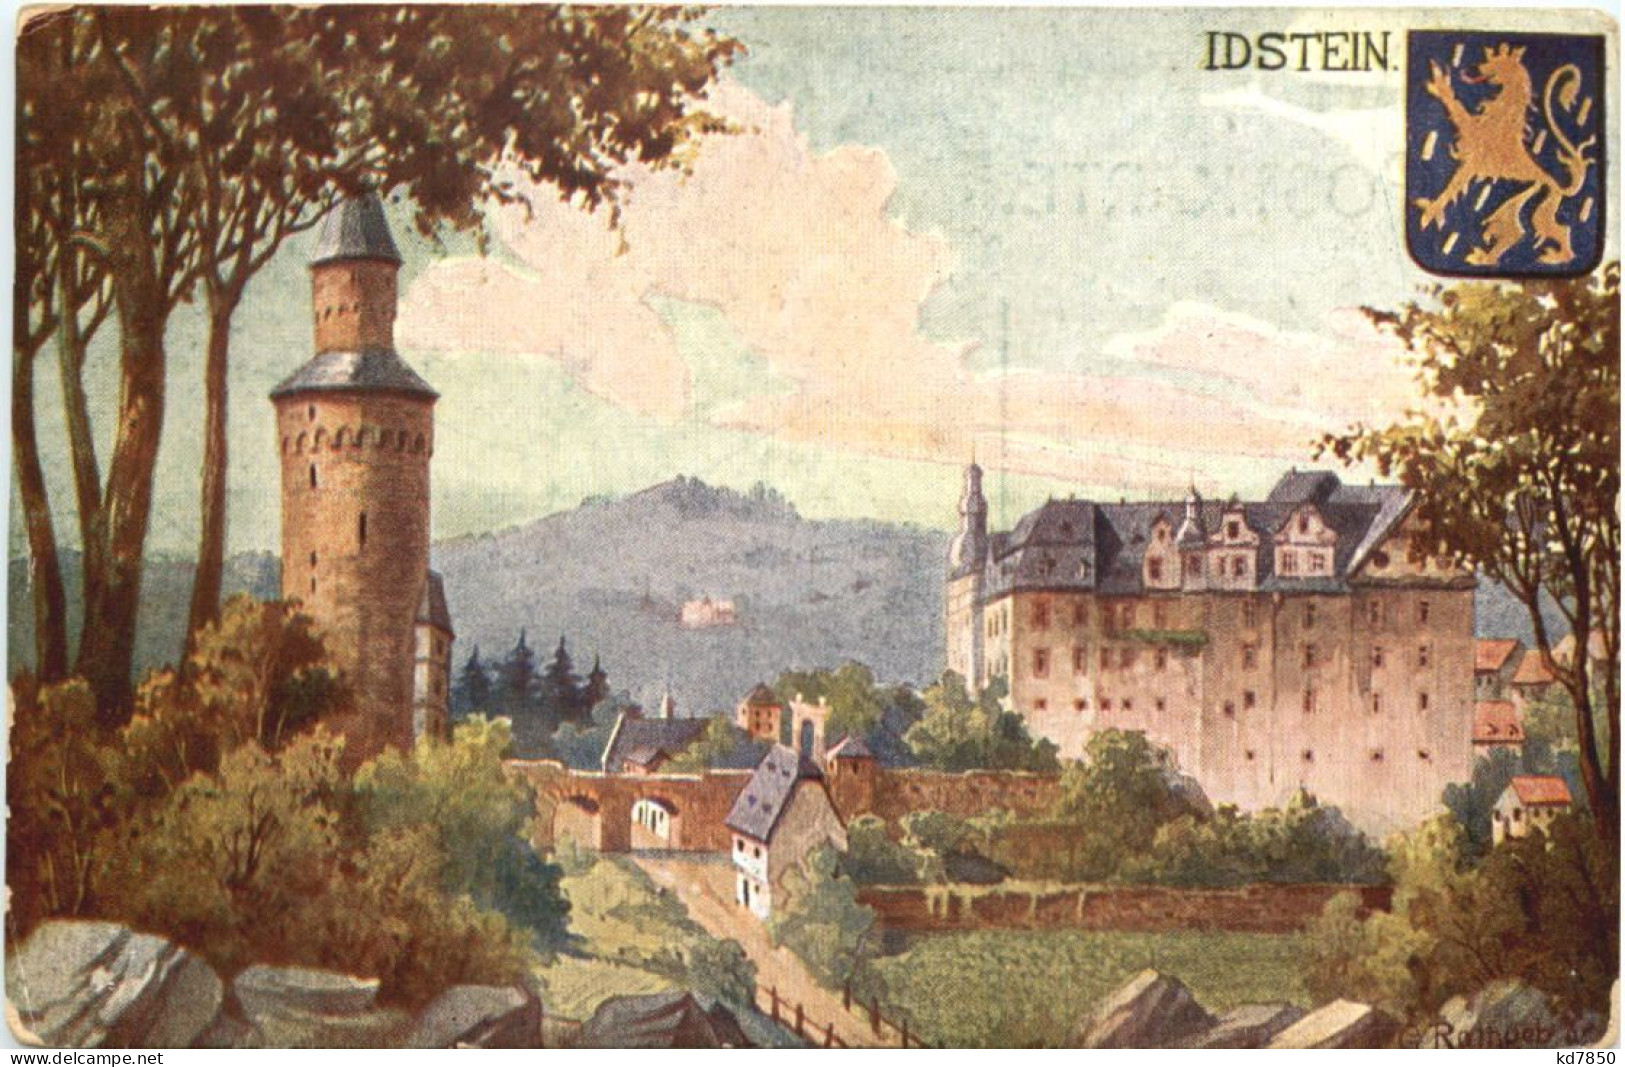 Idstein - Idstein